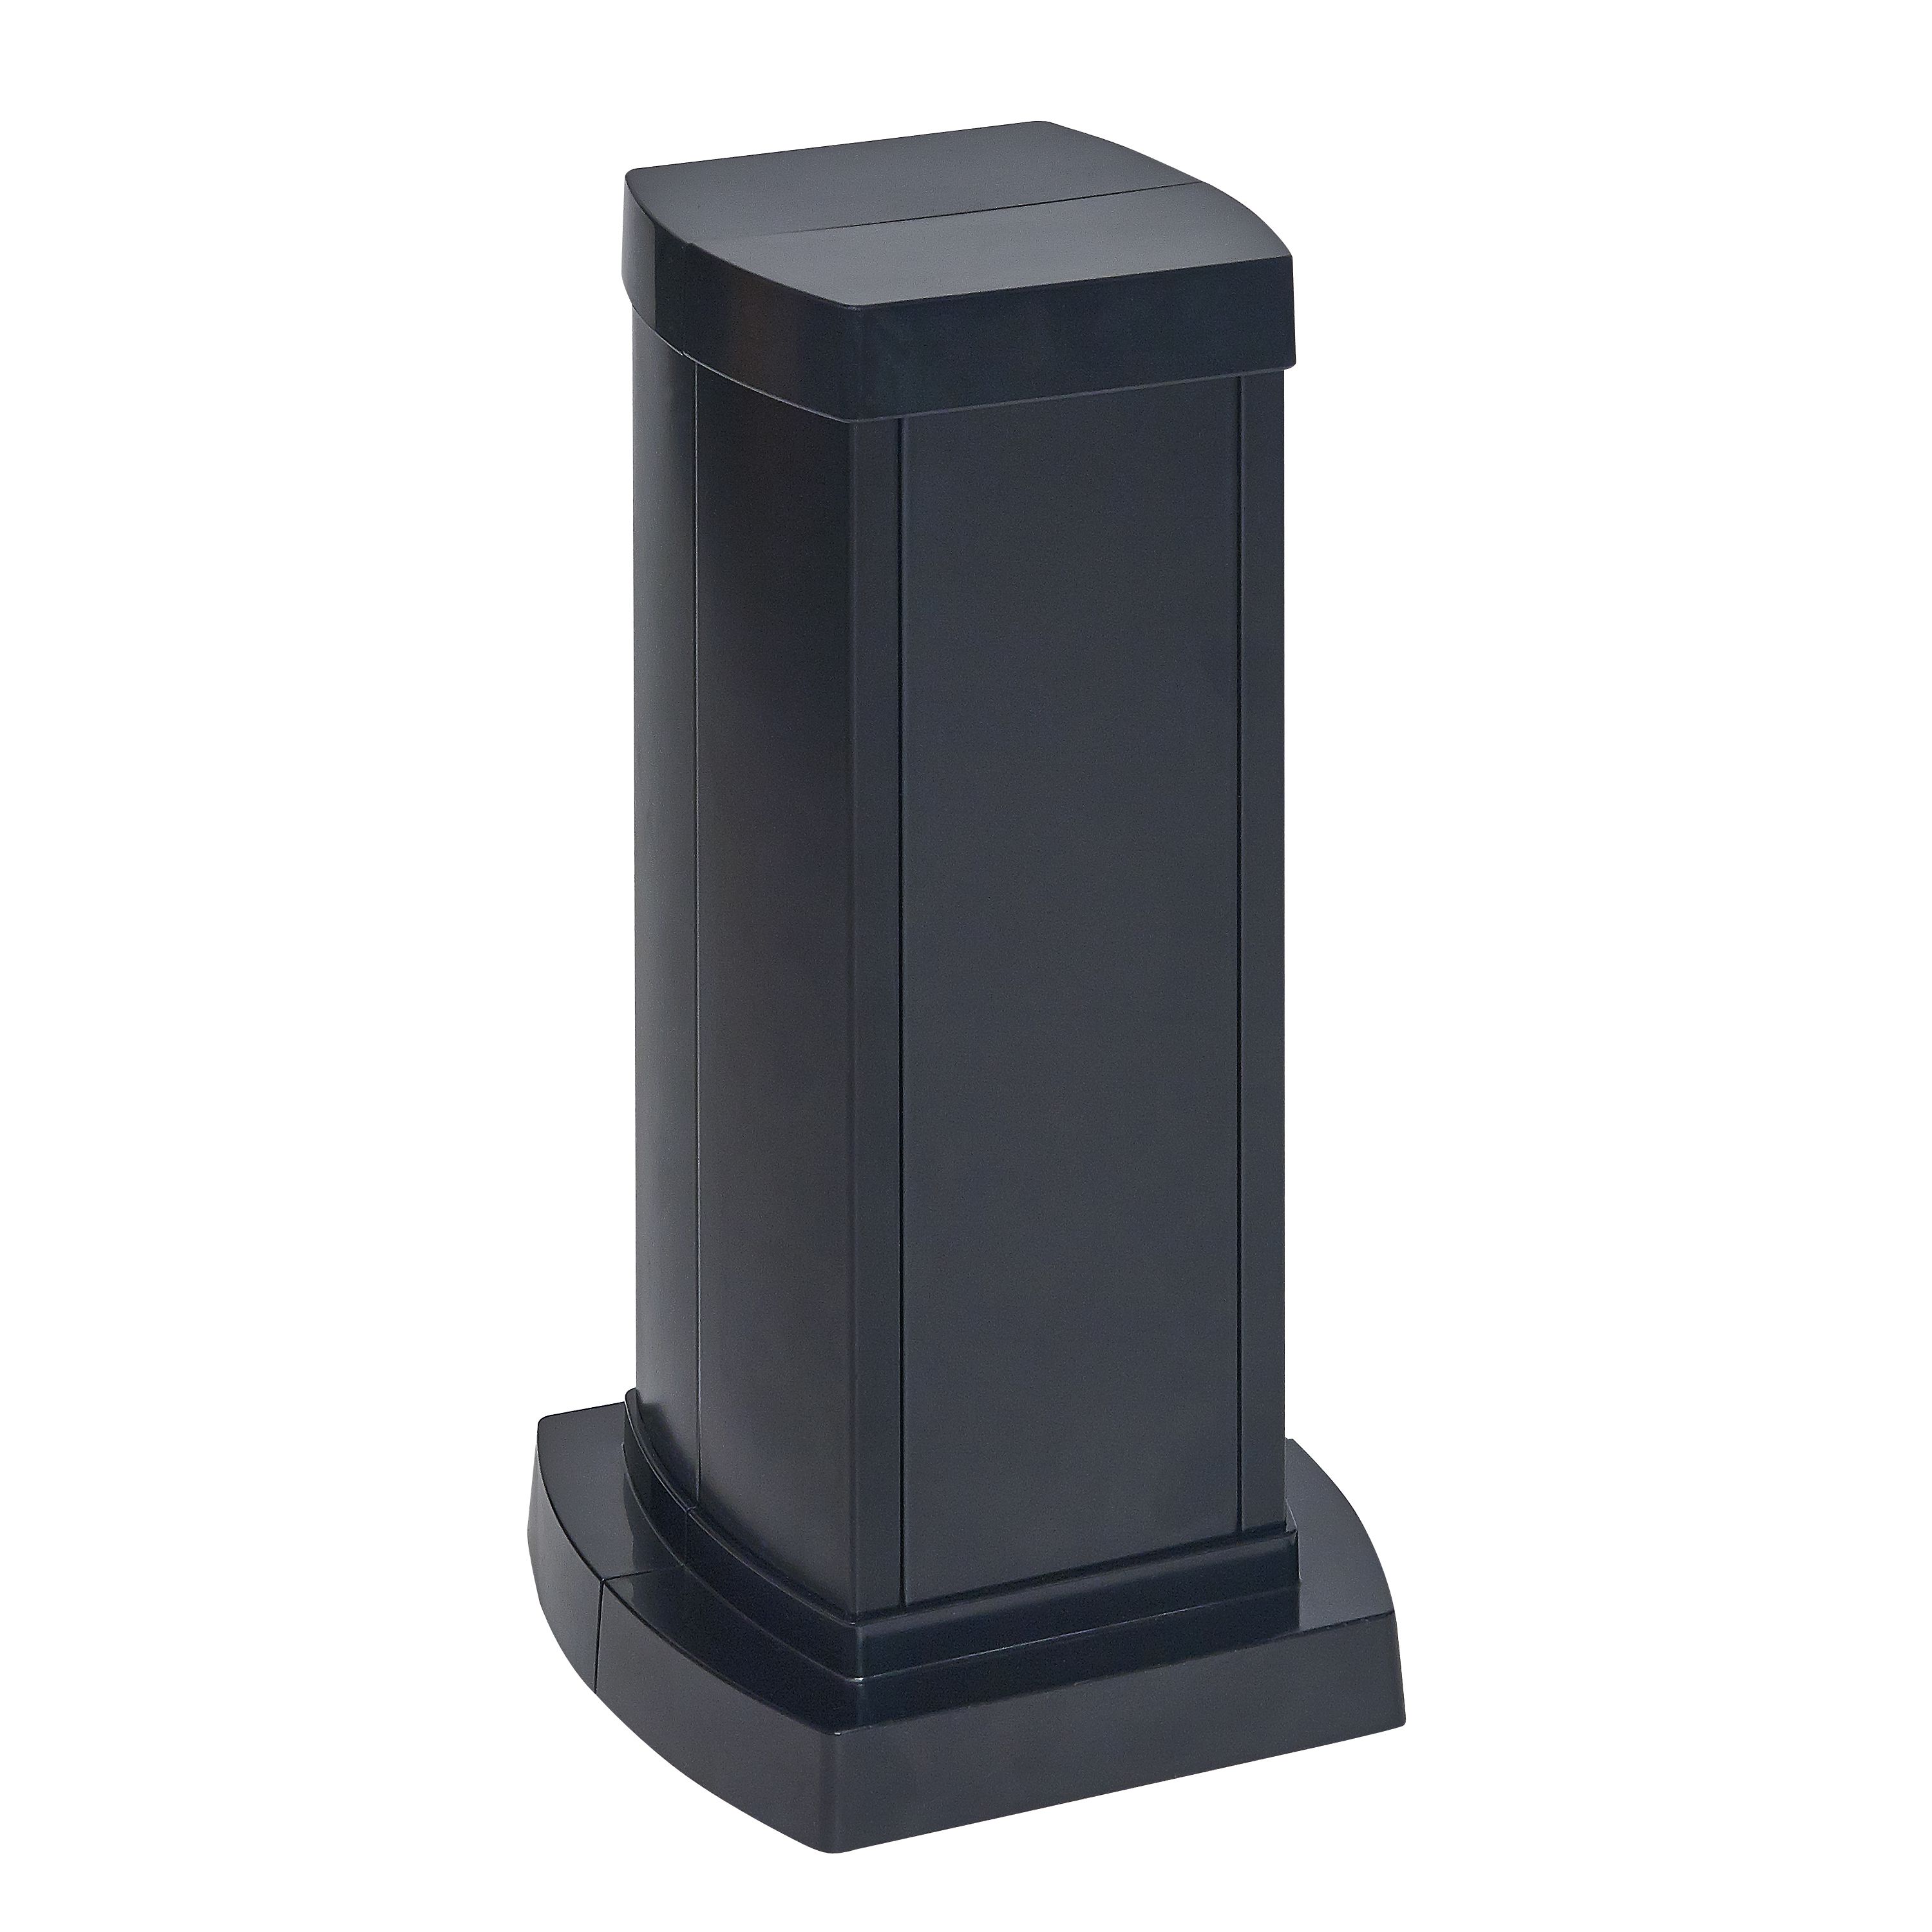 Универсальная мини-колонна алюминиевая с крышкой из алюминия 2 секции, высота 0,3 метра, цвет черный 653122 Legrand